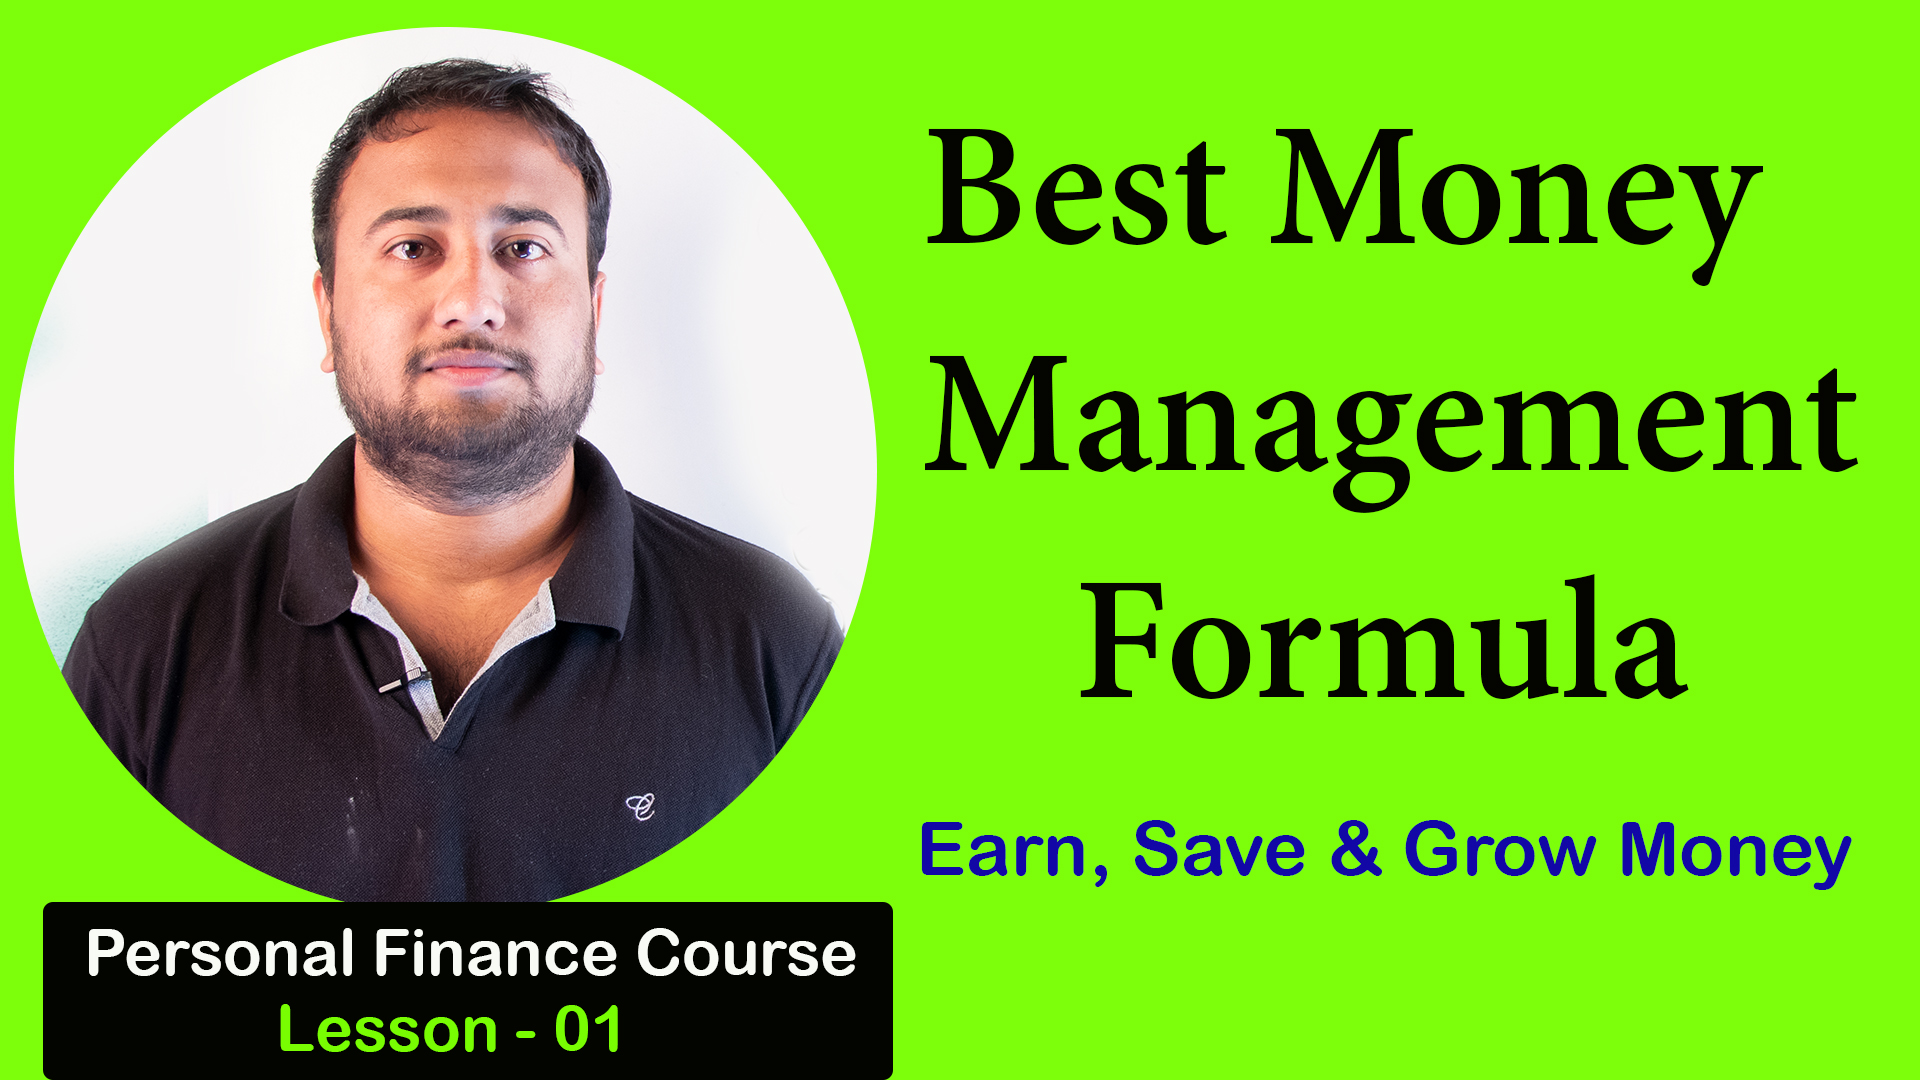 ಹಣವನ್ನು ಗಳಿಸಿ ಉಳಿಸಿ ಬೆಳೆಸಿ - Earn, Save & Grow Money -  Best Money Management Formula